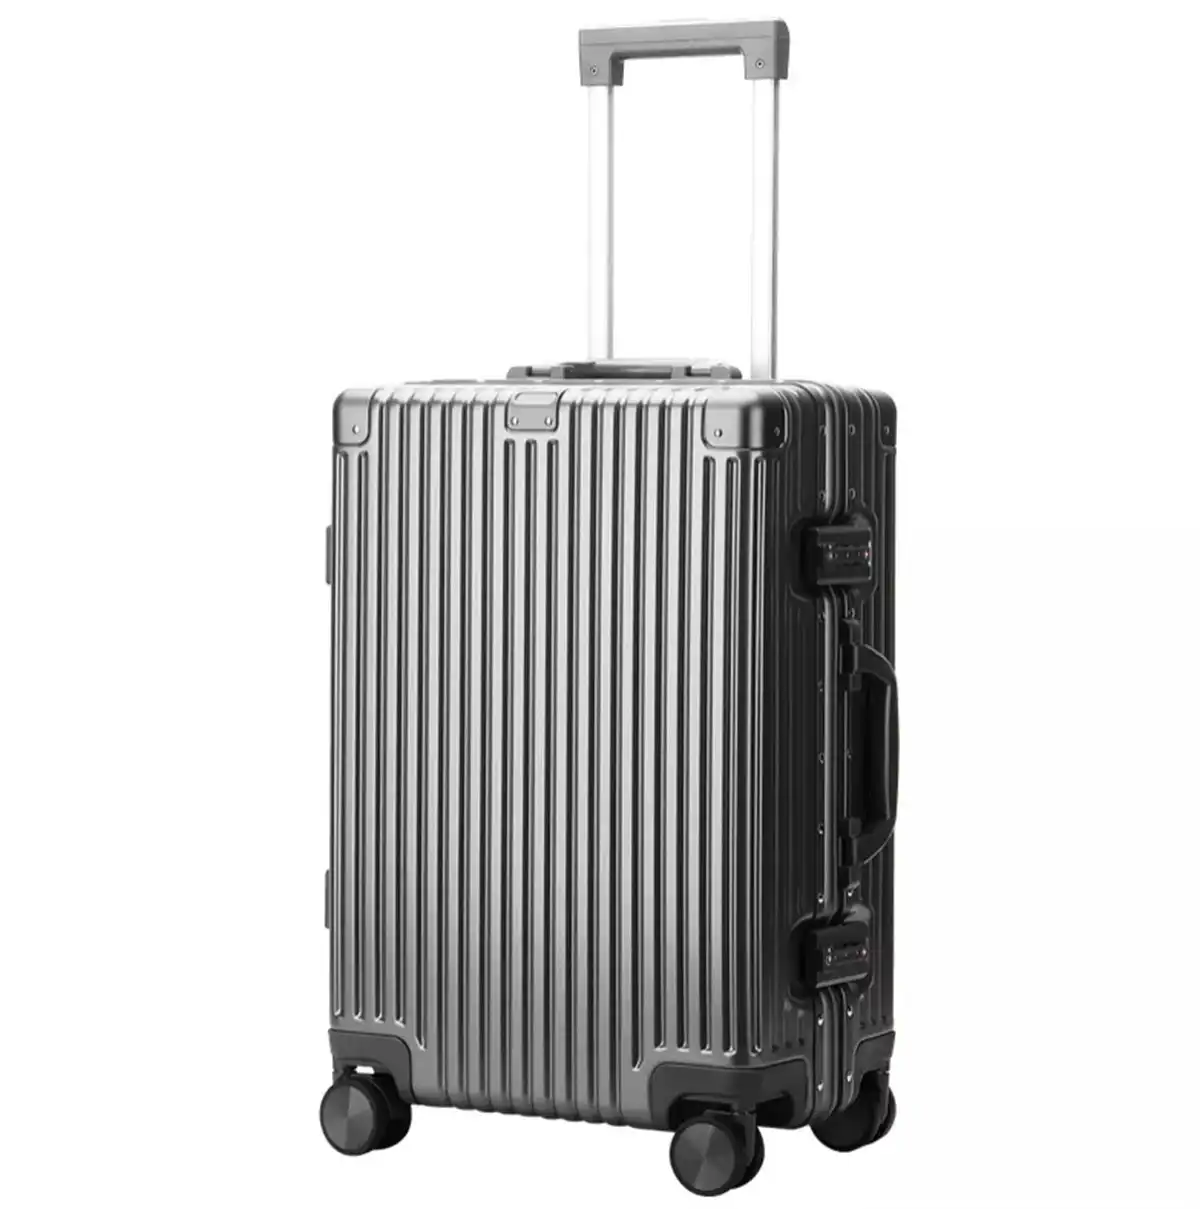 Bopai Aluminium Luggage Suitcase Light weight Large HardCase B3248 Grey